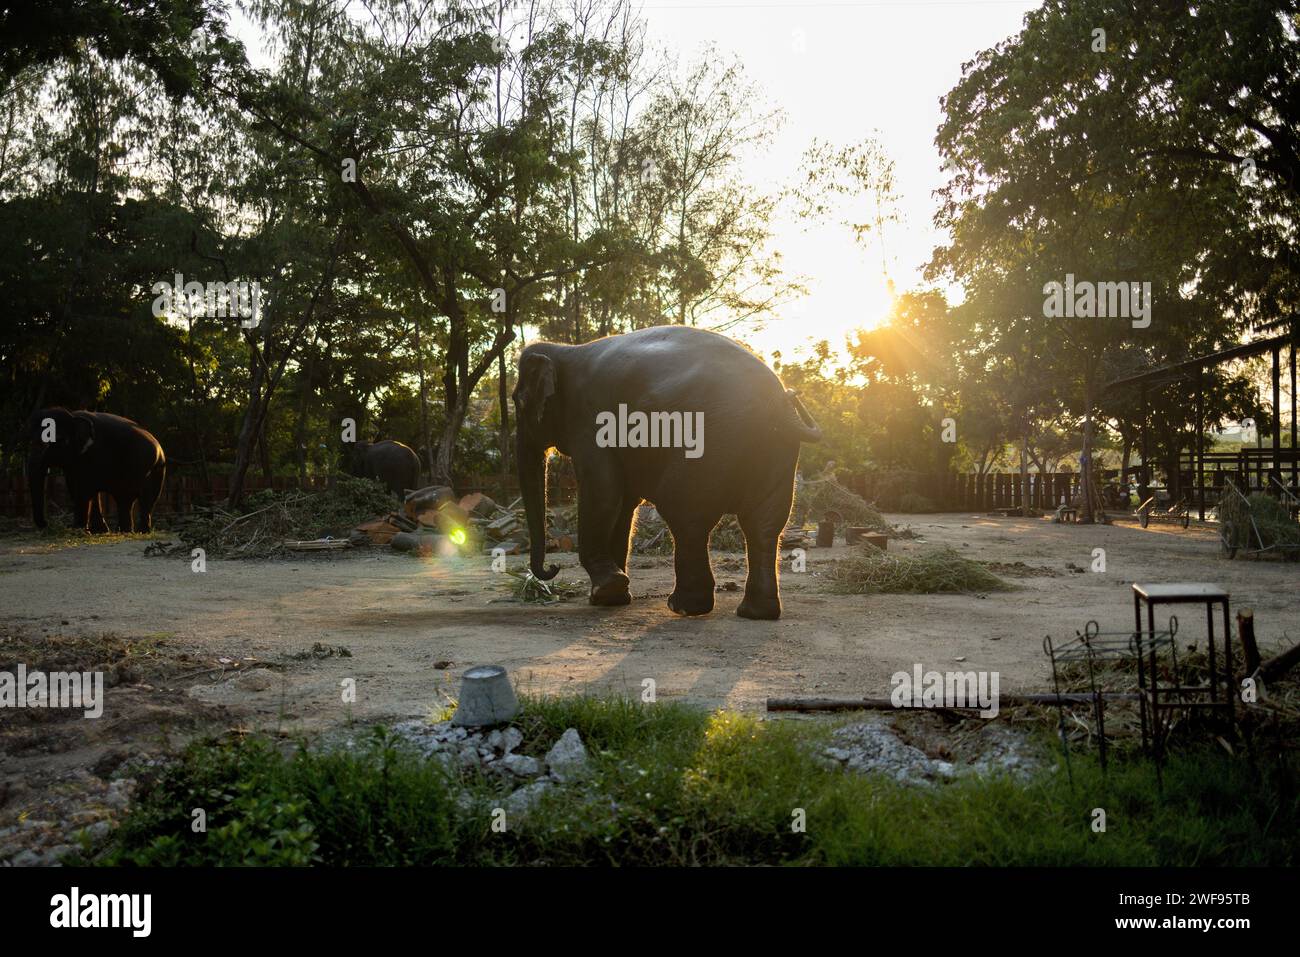 Un grande elefante si erge con orgoglio in un campo di terra, mostrando le sue dimensioni e la sua forza immensa. Foto Stock